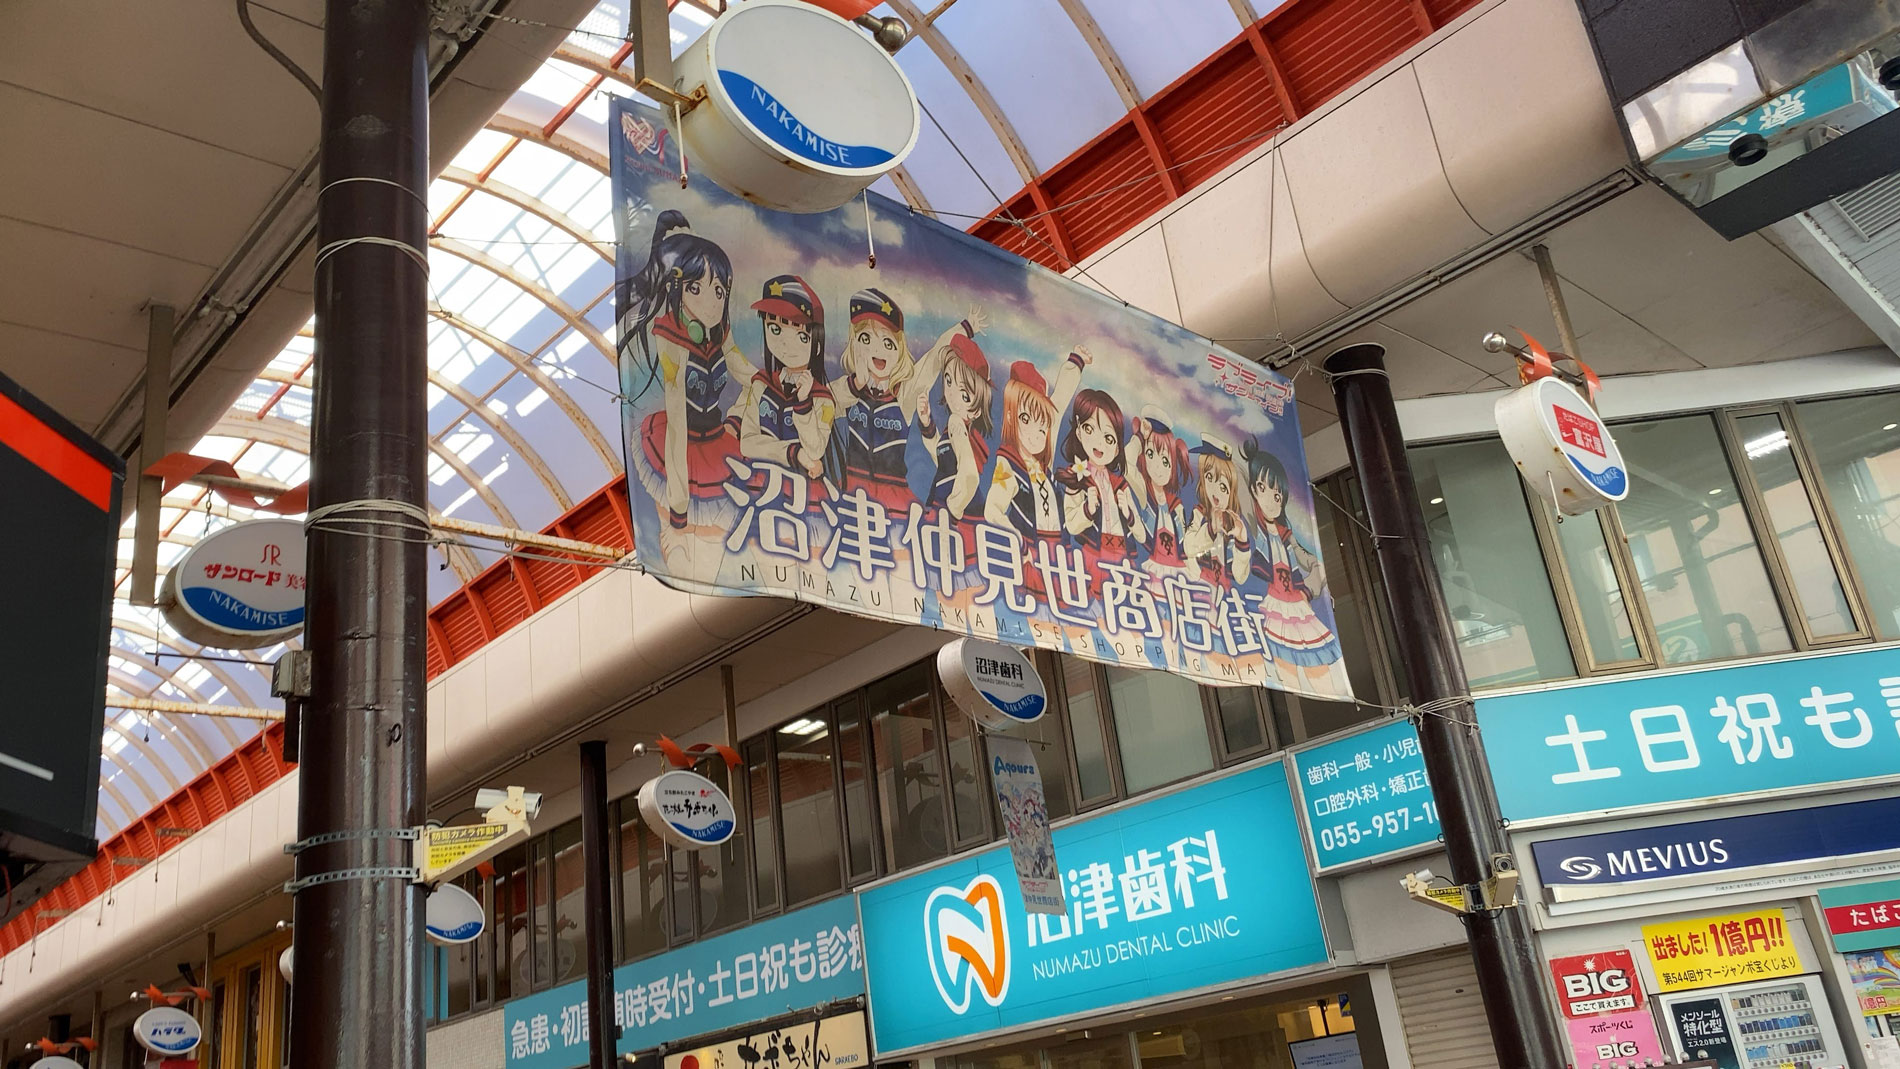 沼津駅の仲見世商店街の入り口には、サンシャインメンバーの巨大タペストリーがある